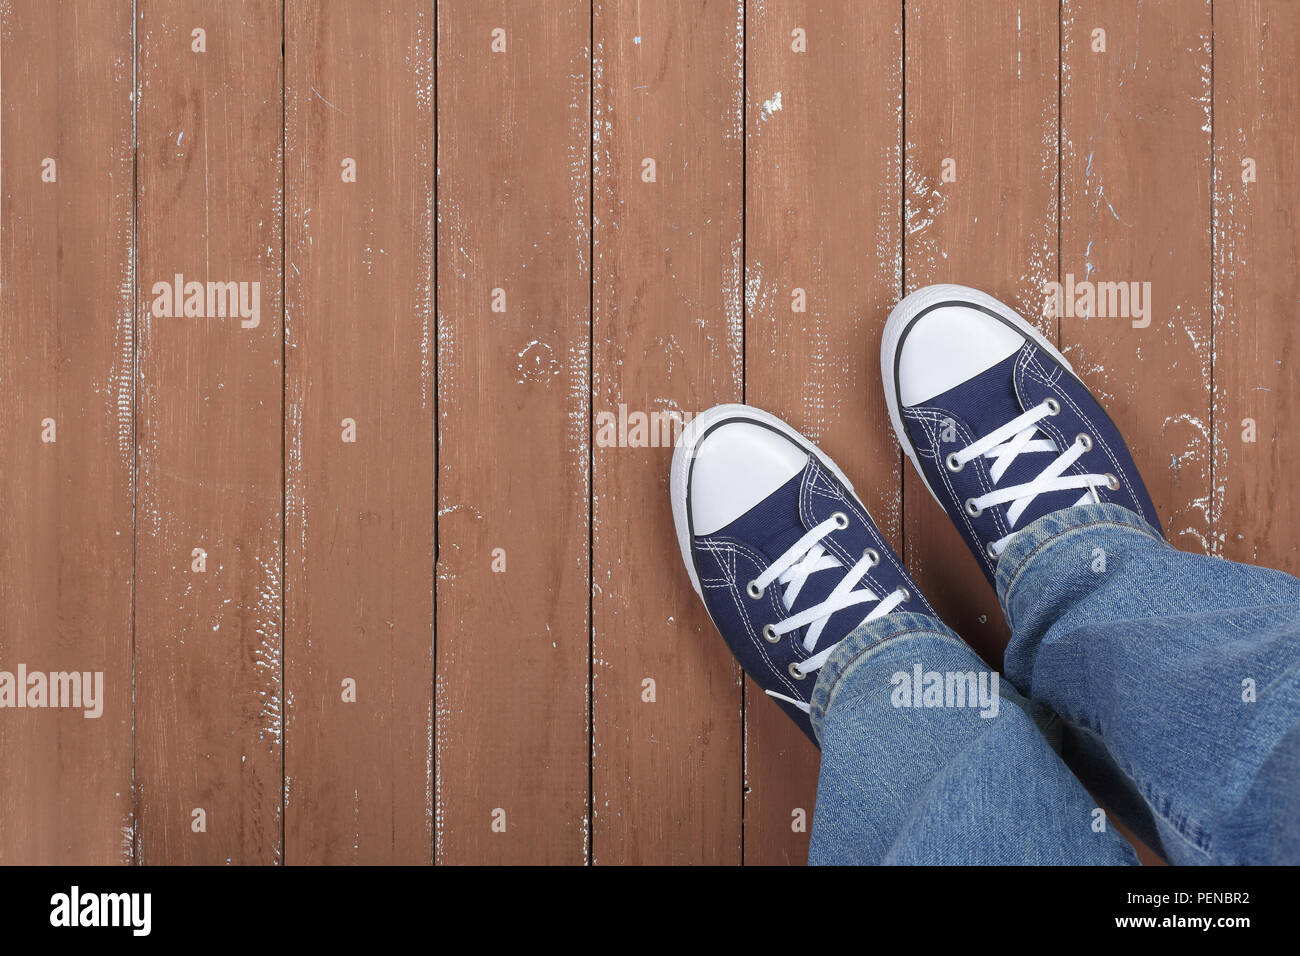 Vêtements, chaussures et accessoires - Vue de dessus libre gumshoes et jeans bleu Vue de dessus sur un fond de bois Banque D'Images